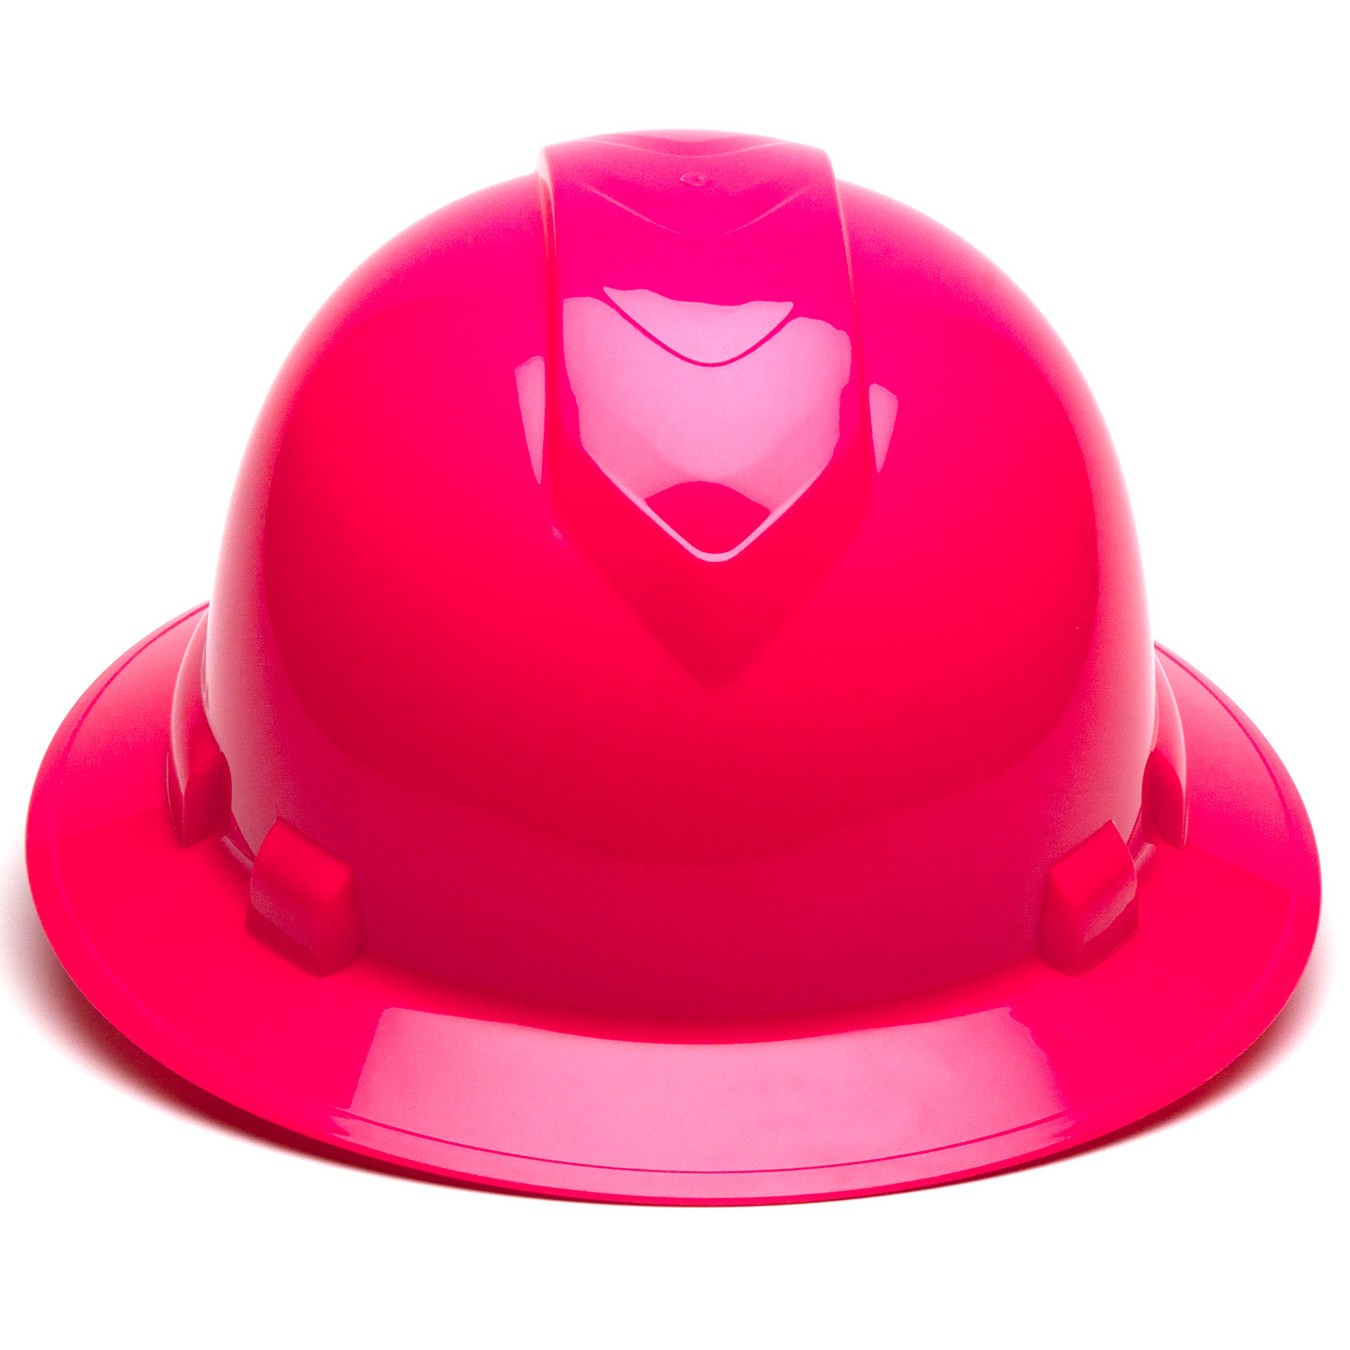 Pyramex Hard Hat Full Brim Cap 4 Point Ratchet Ridgeline Work Job Safety Hp541 Pink HP54170 for sale online 